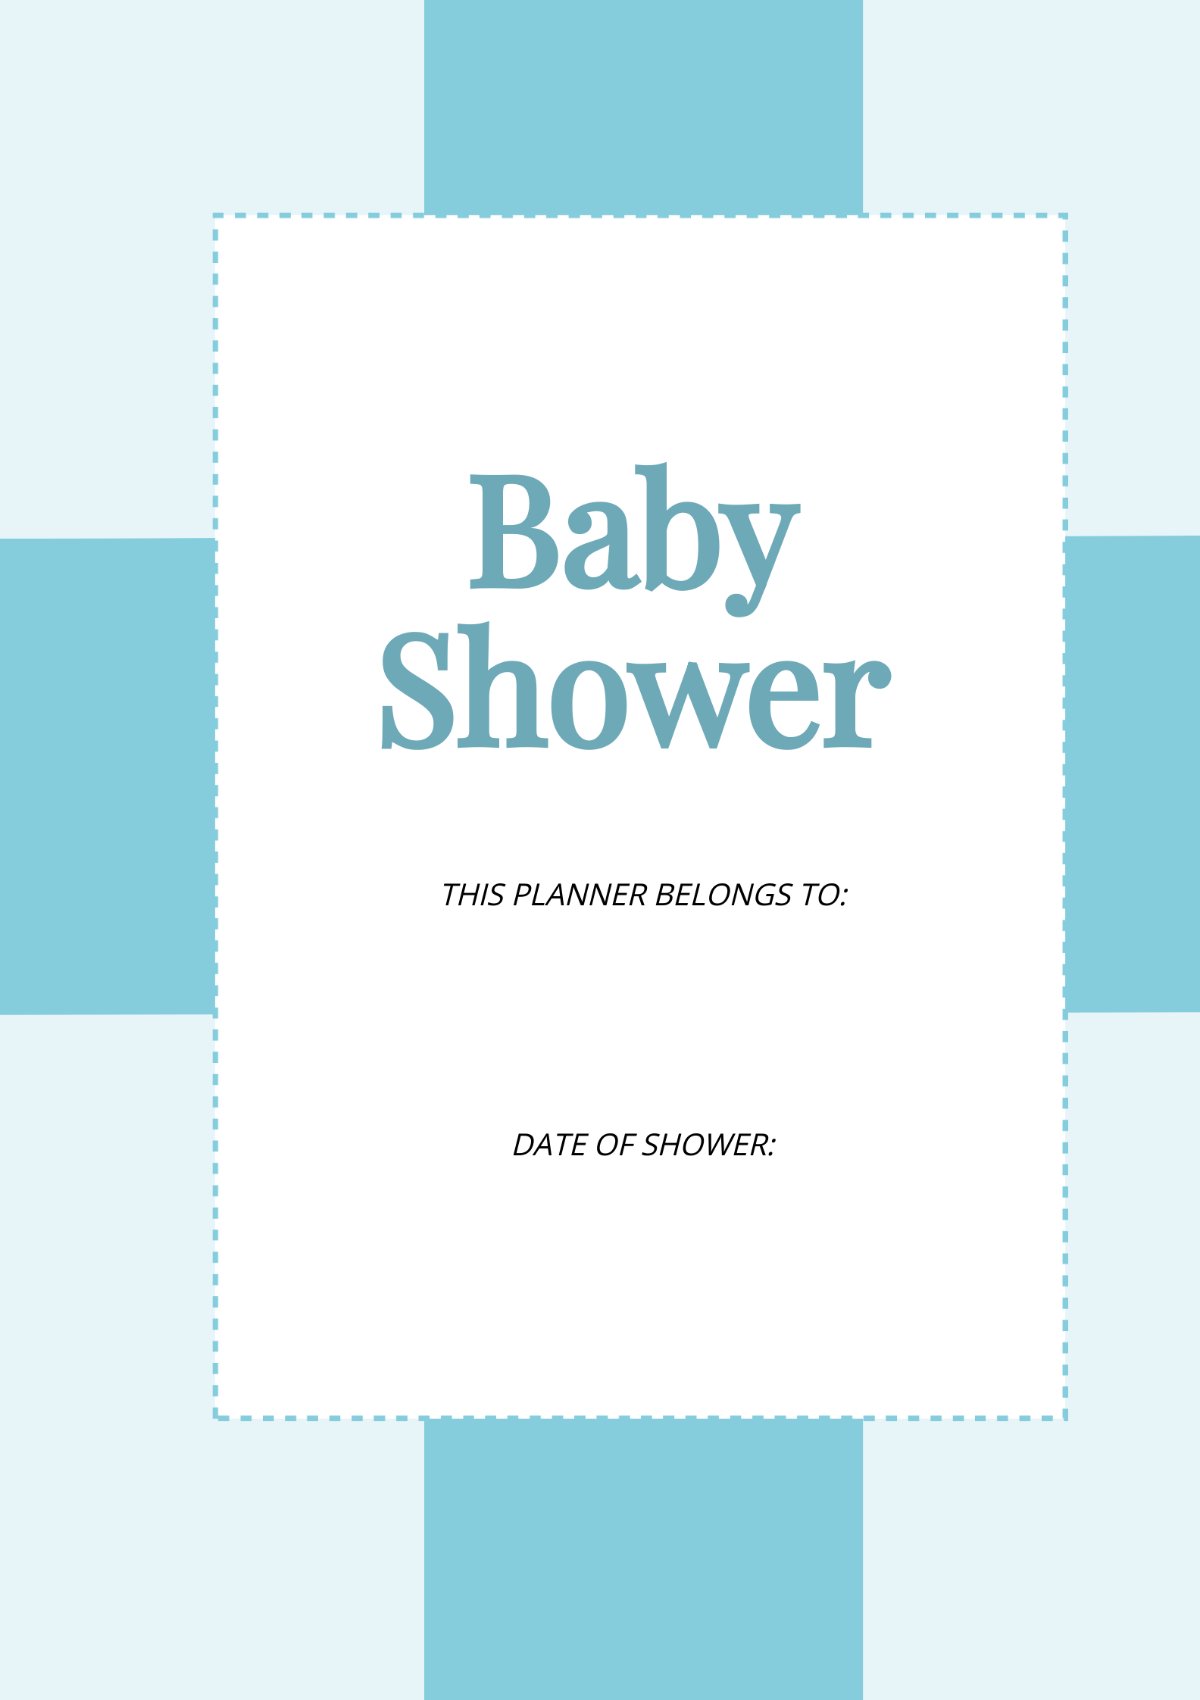 Basic Baby Shower Planner